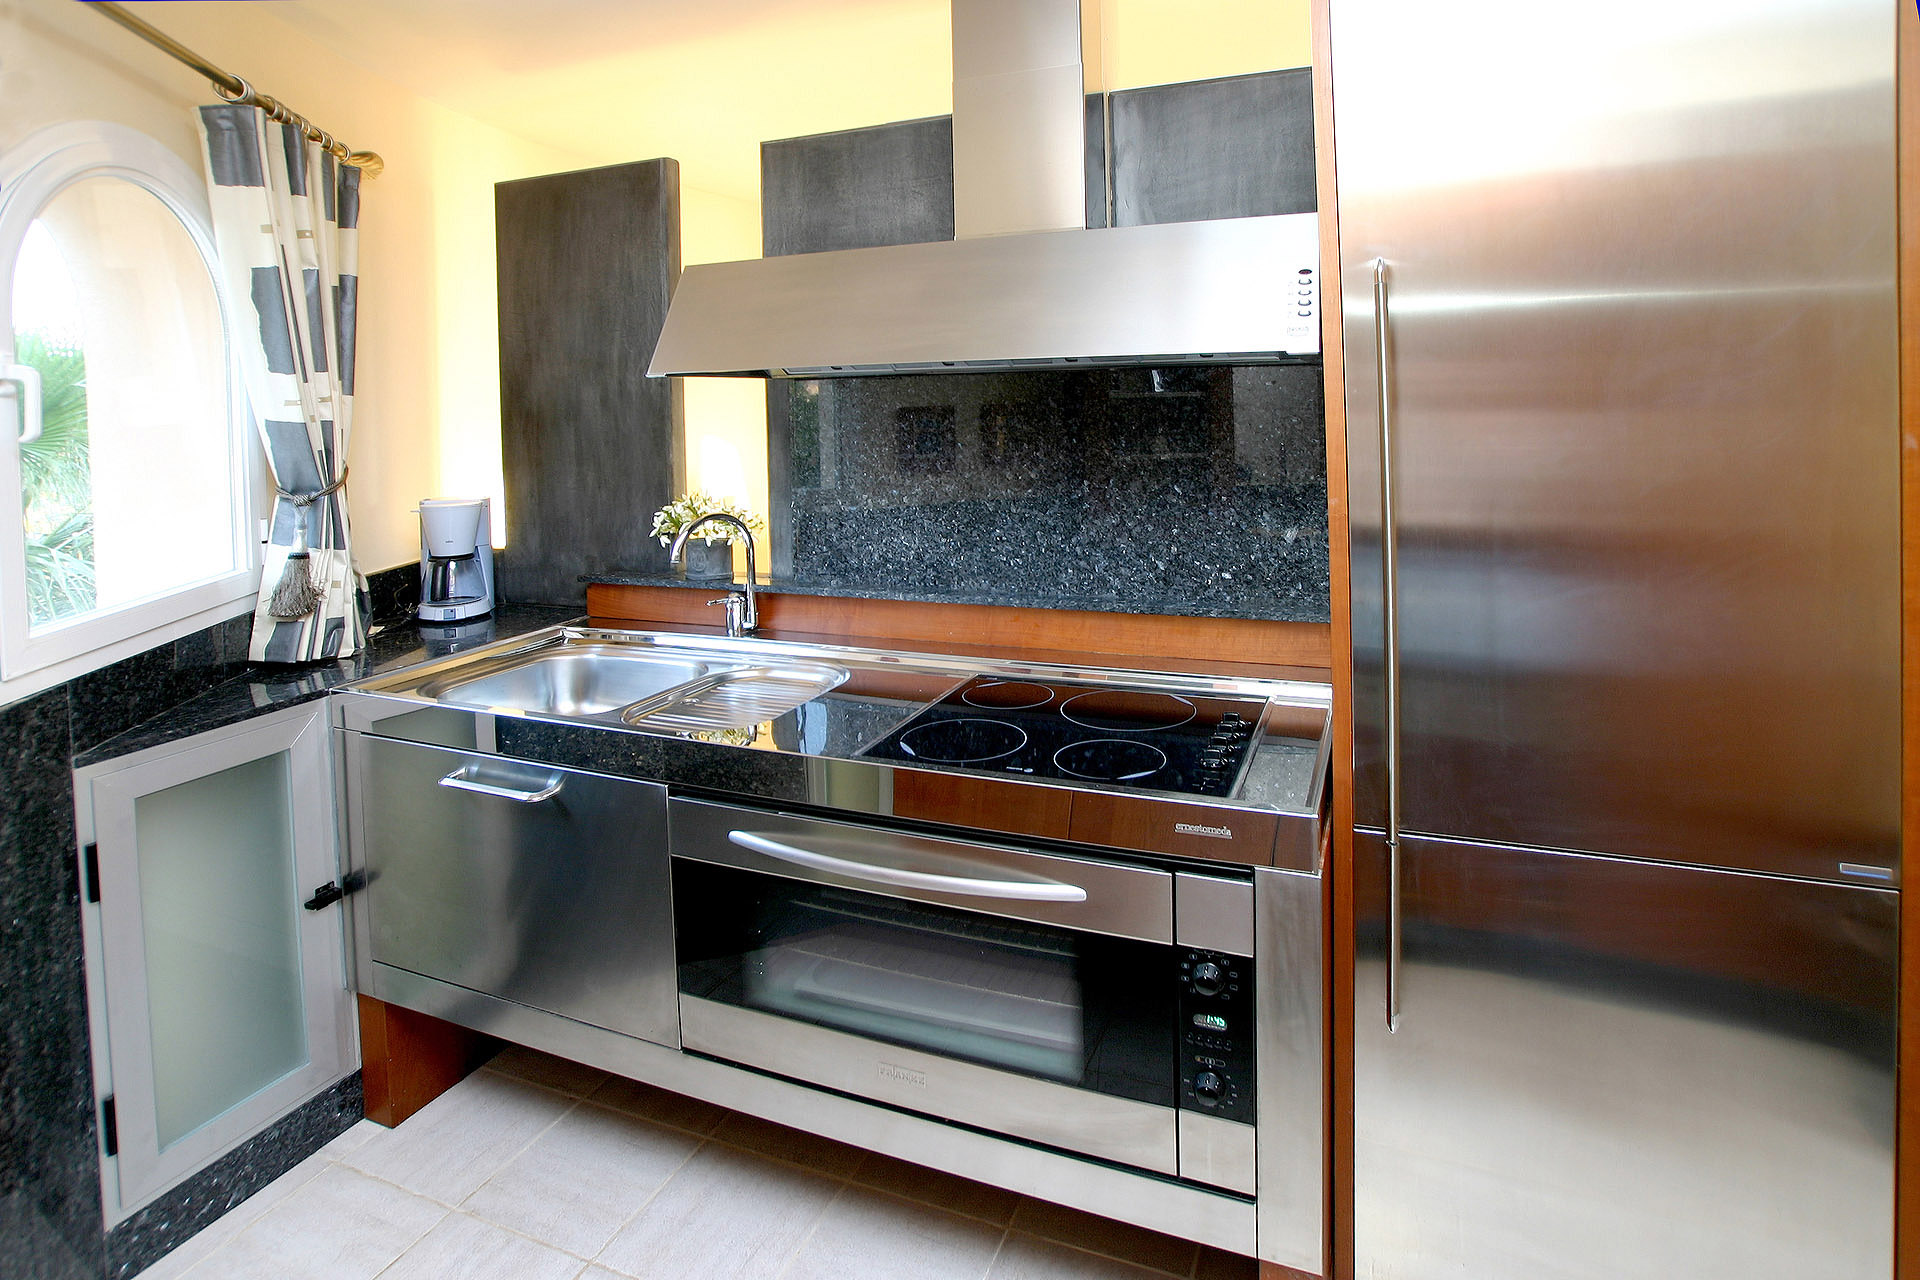 Moderne keukens, slaapkamers, eetkamers en badkamers - Marcotte Style